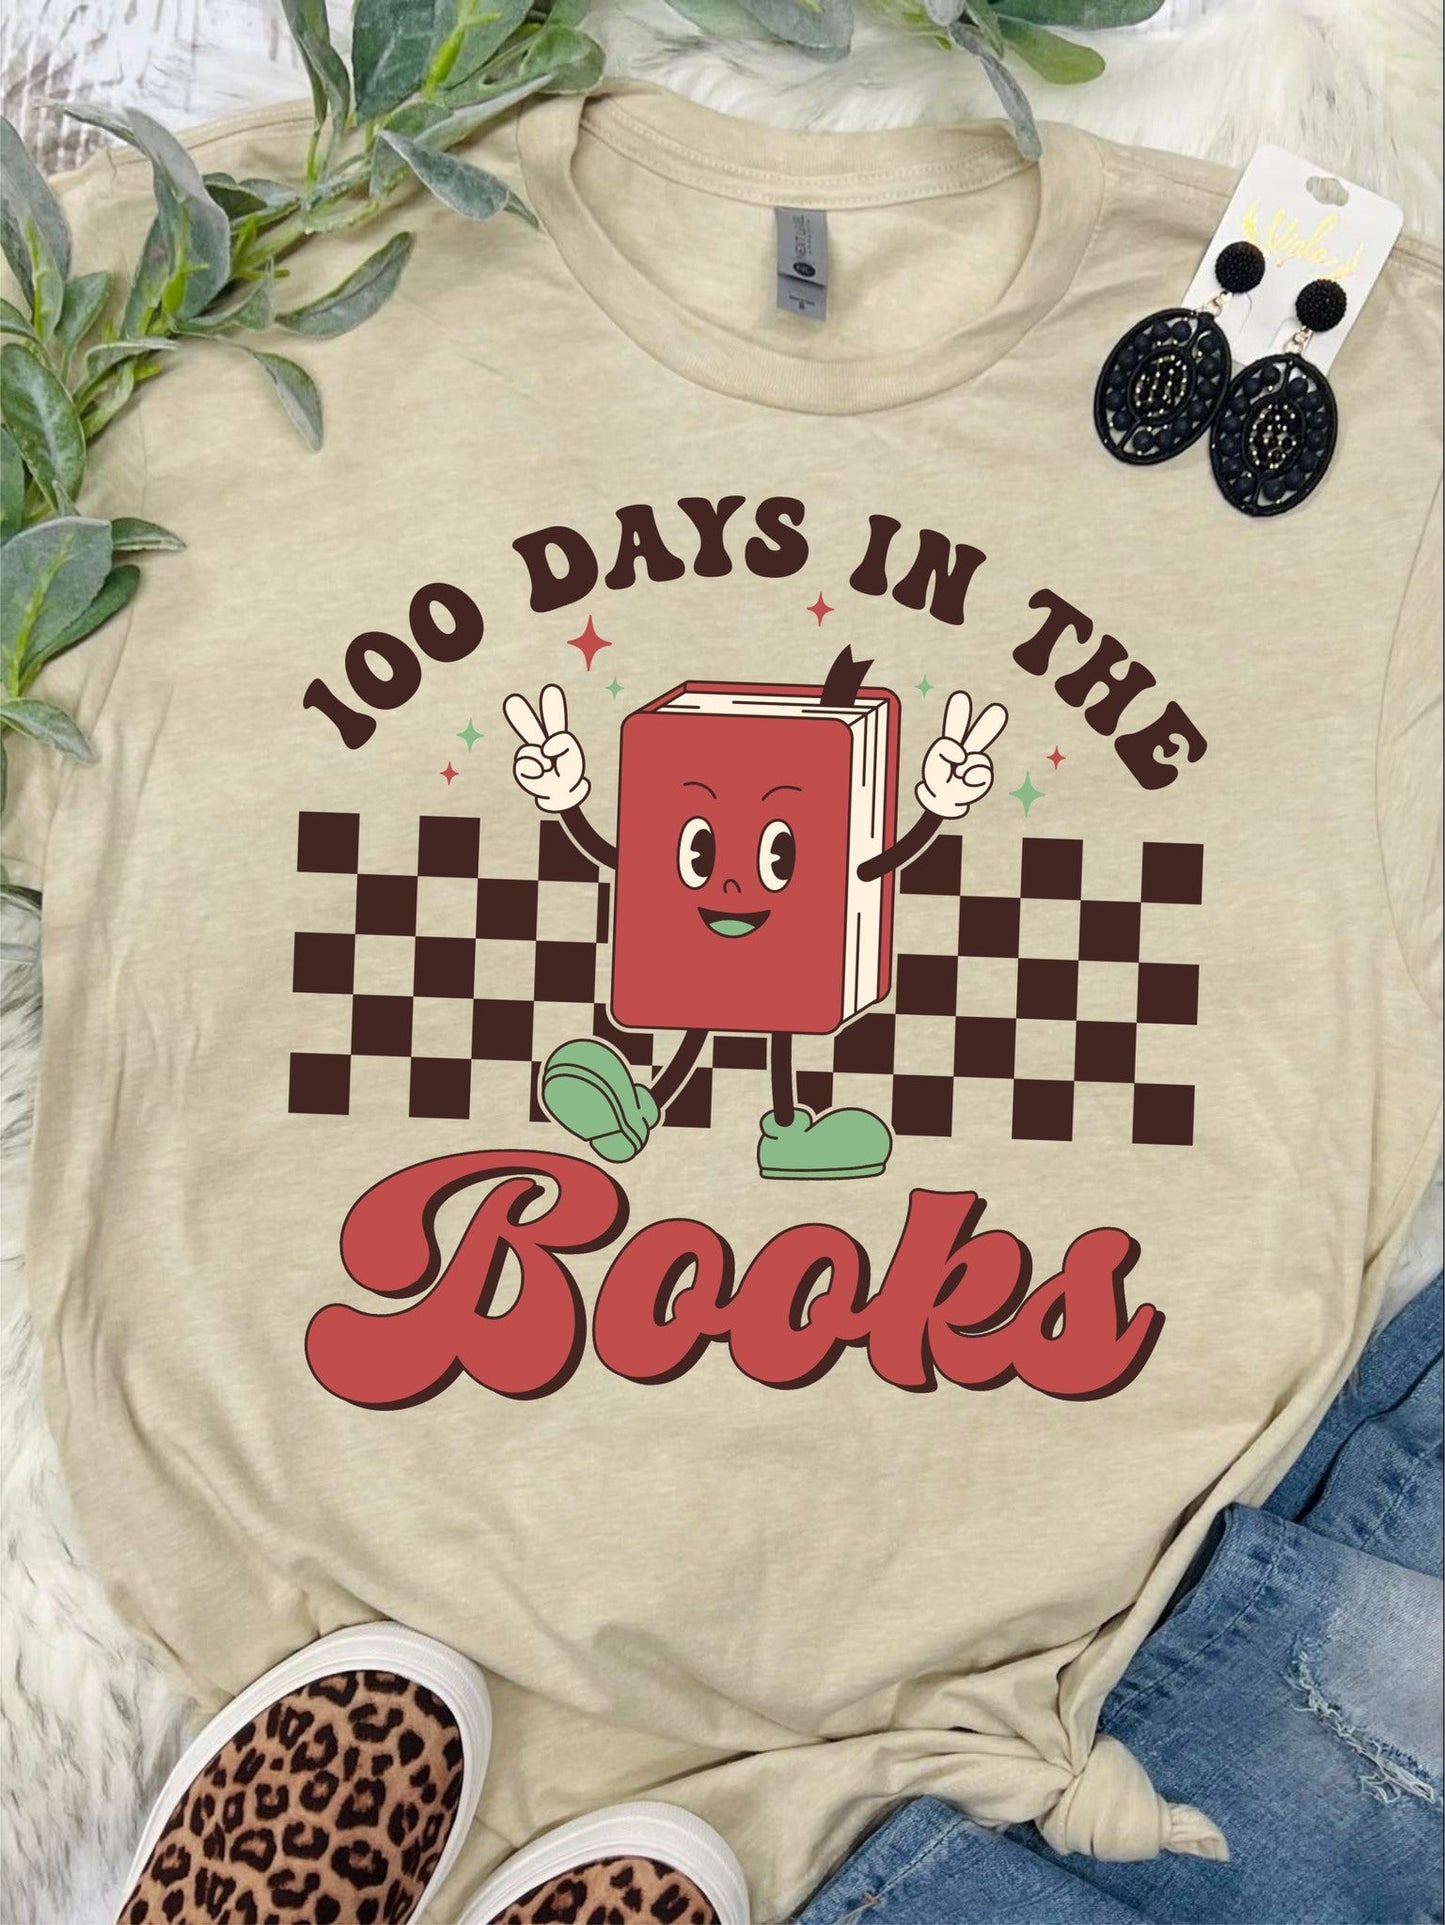 100 Days In The Books Apple Tan Tee